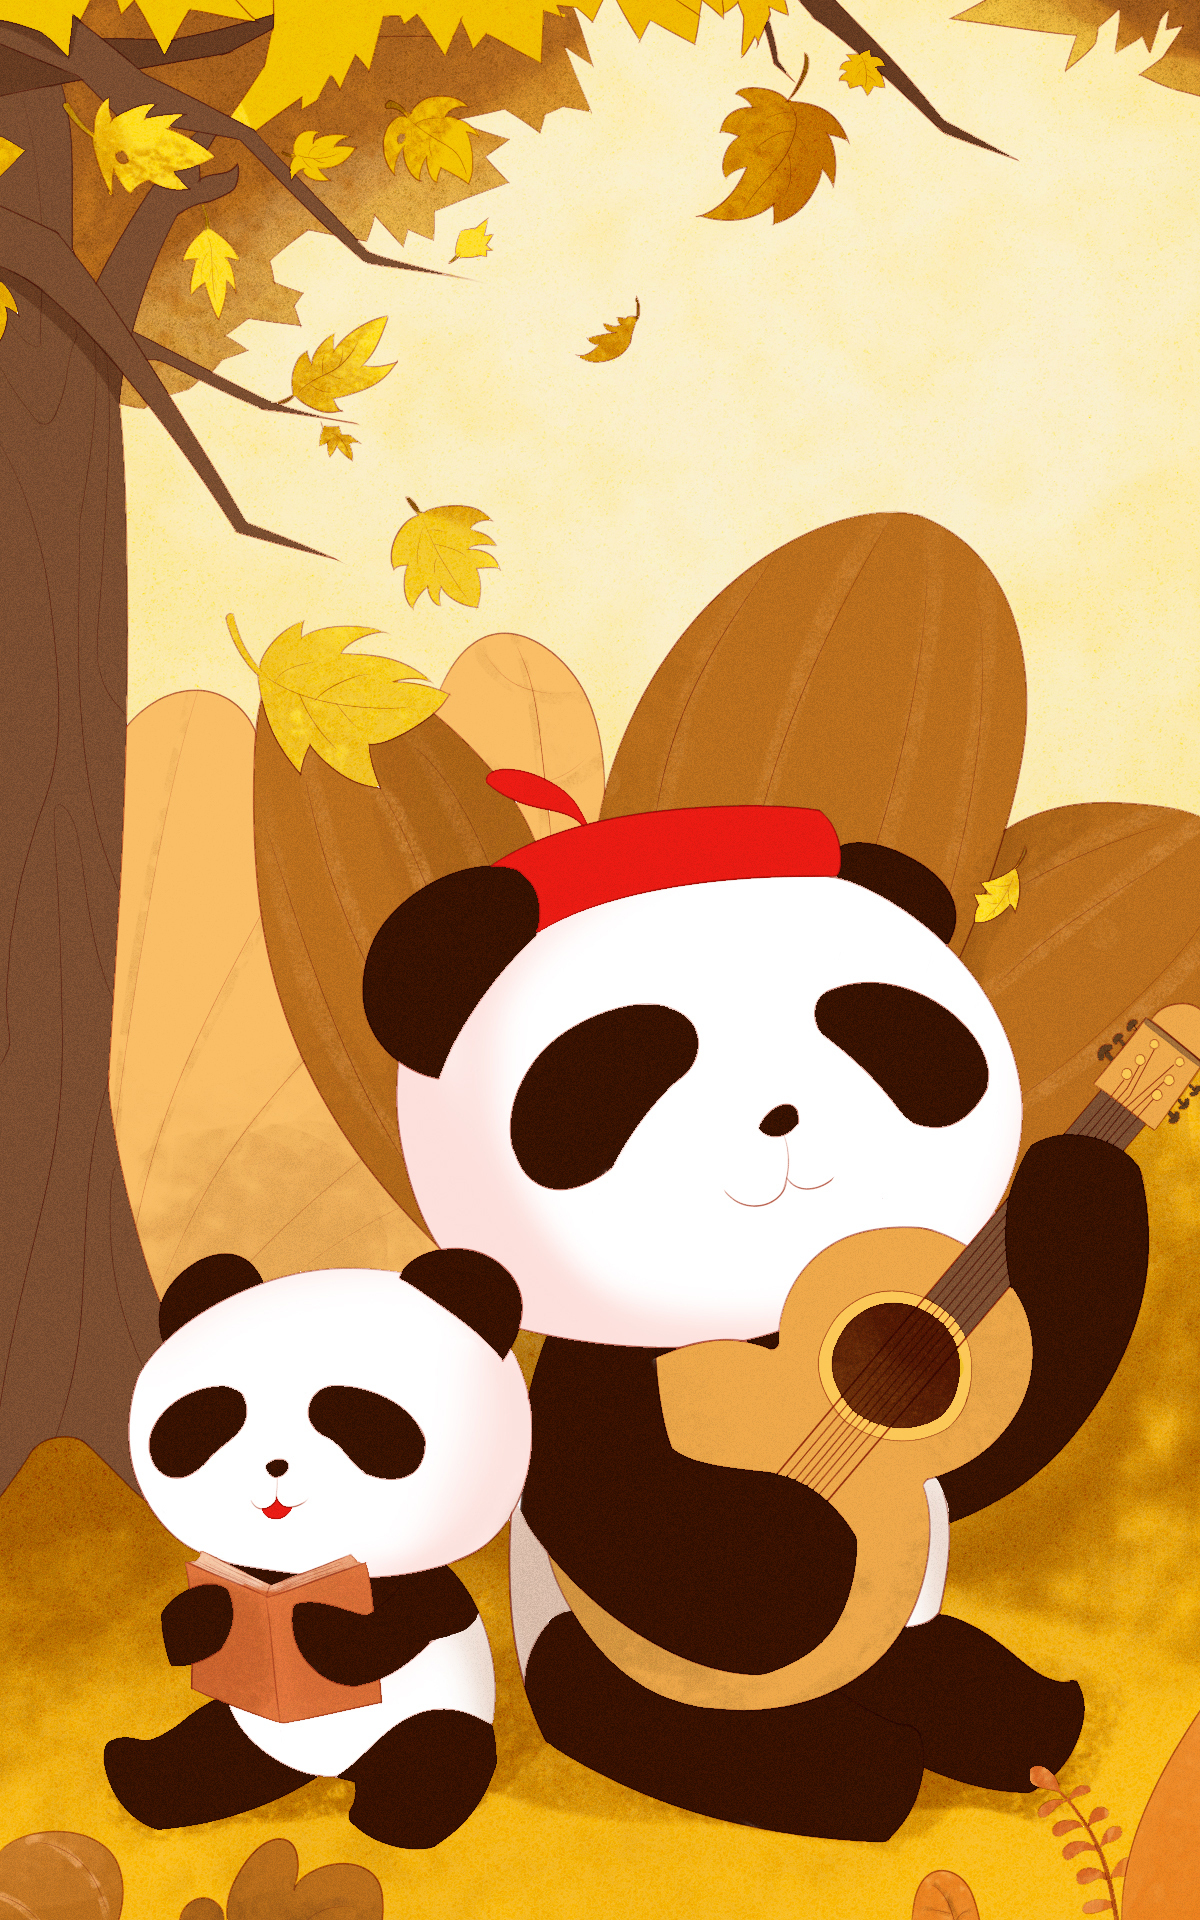 吉祥物 卡通画 可爱 熊猫 插画图2